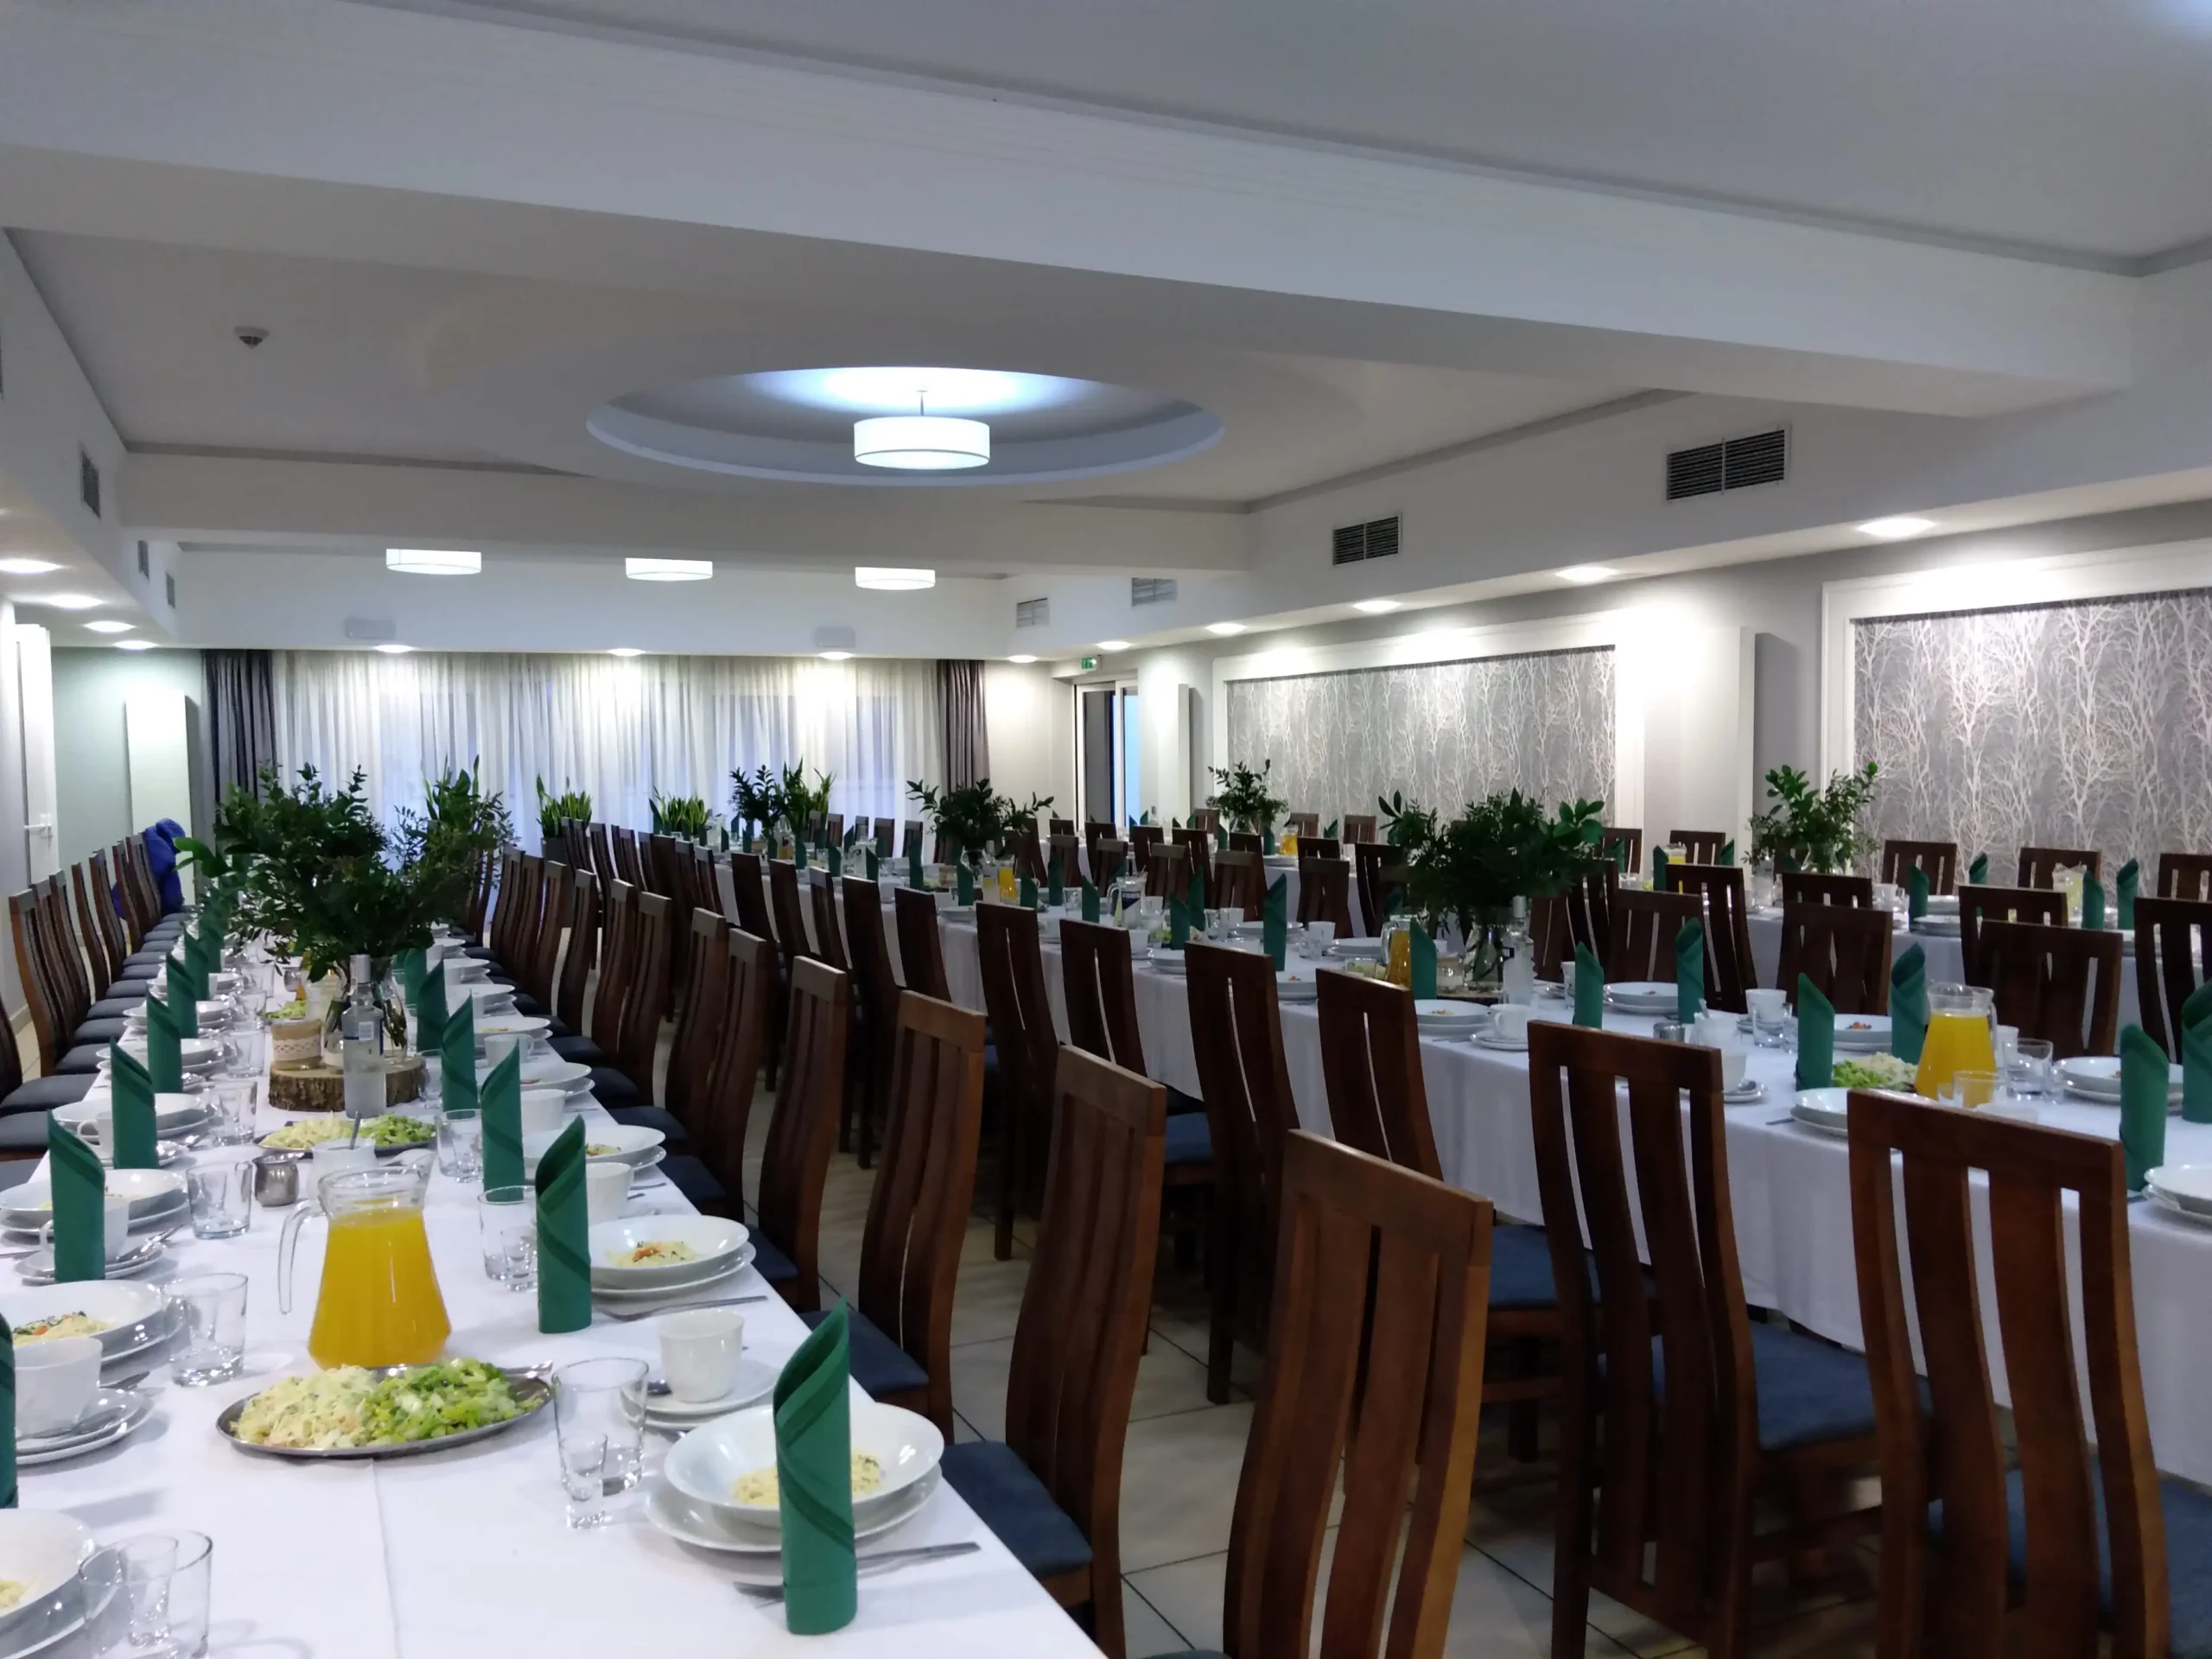 Sala "Plenarna" do 150 osób, przygotowana do przyjęcia weselnego